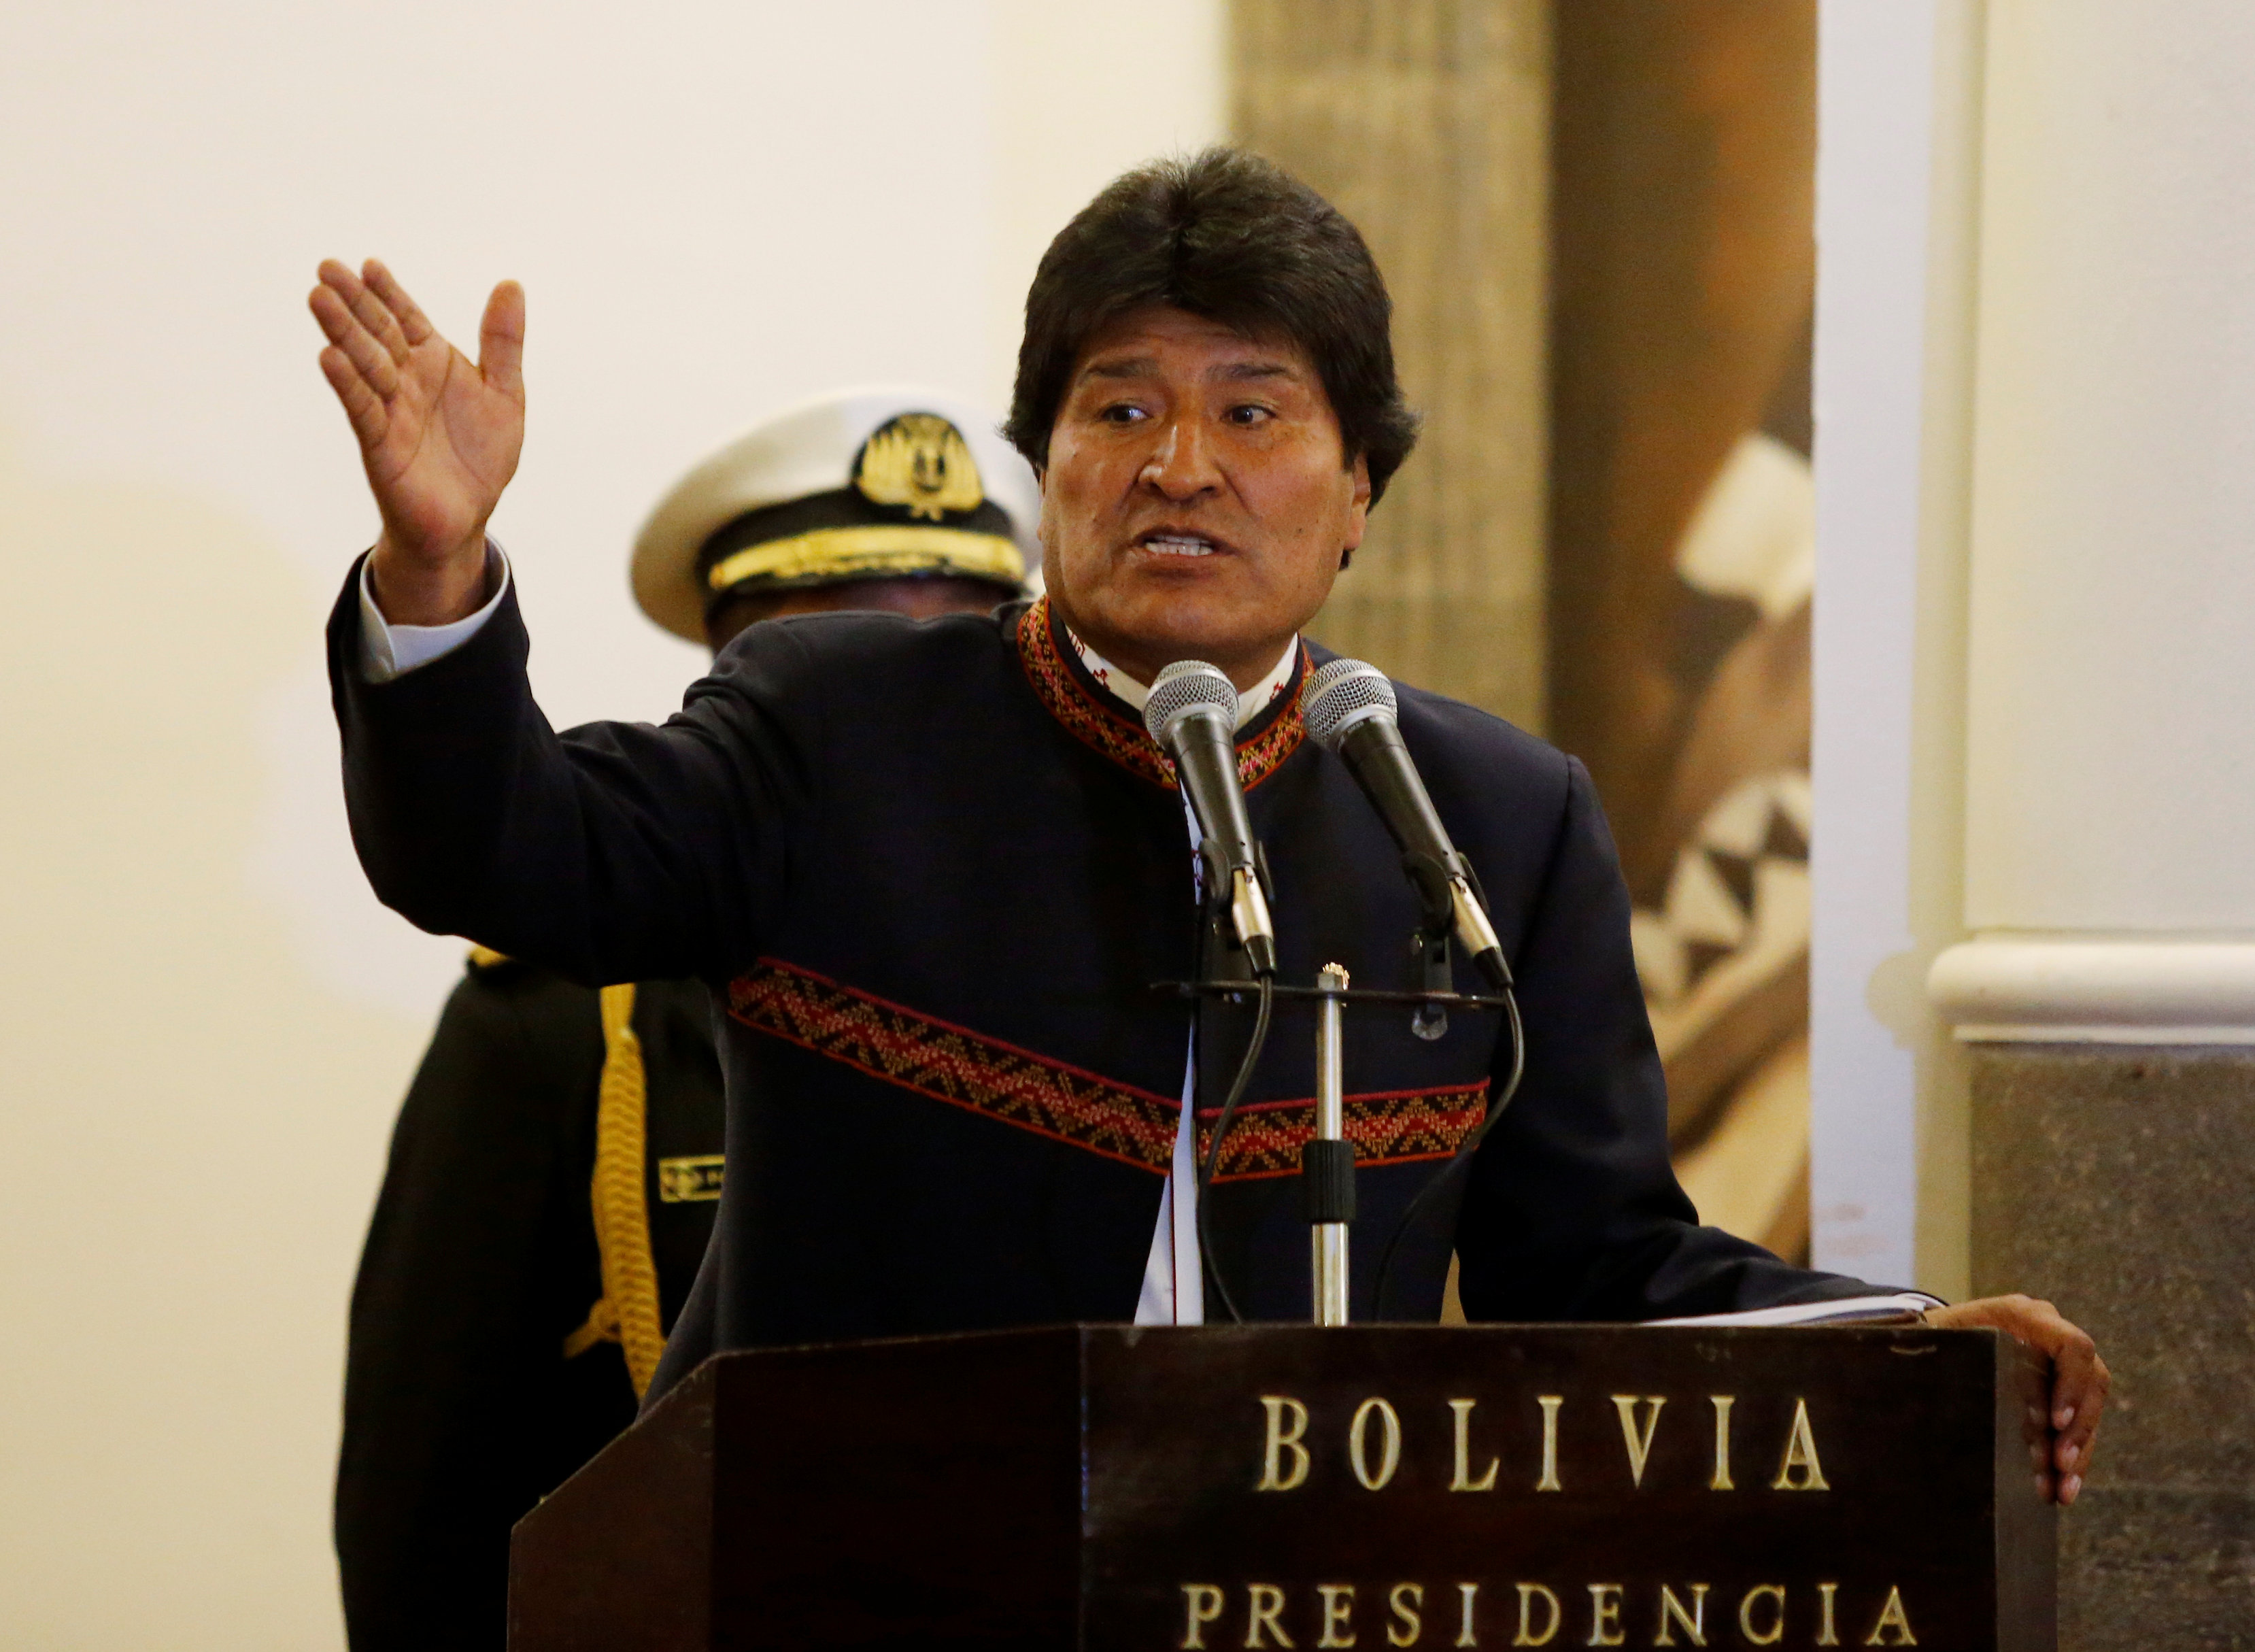 Evo Morales cuestionó el papel del G20 respecto a las guerras y la crisis de refugiados en el mundo.